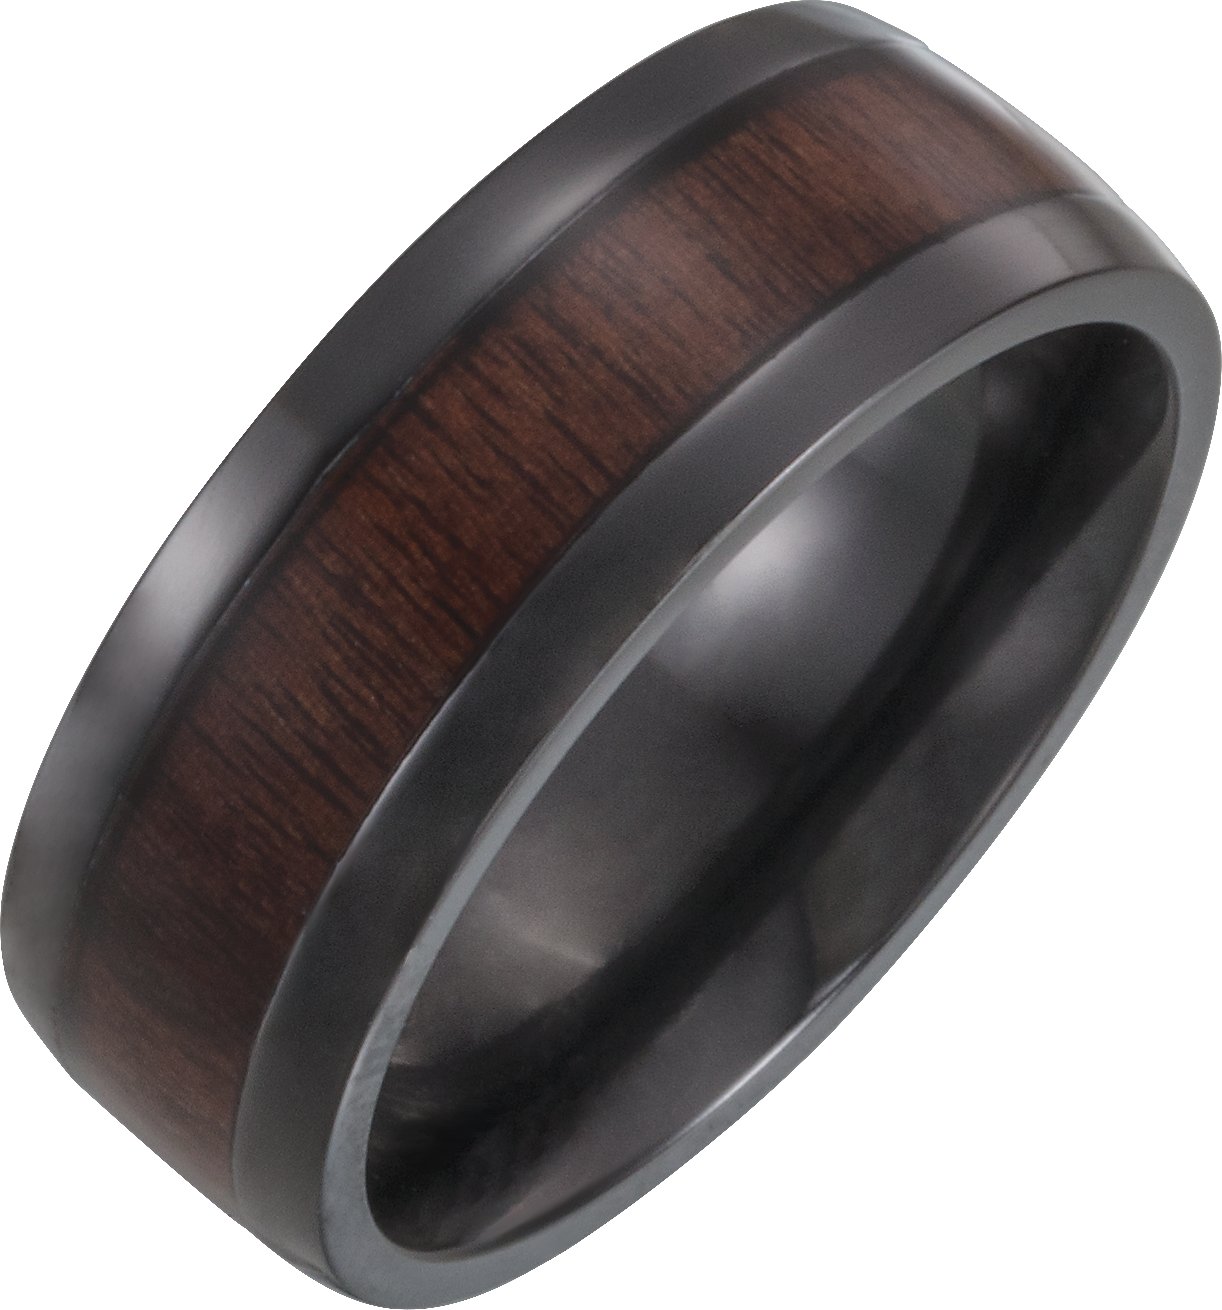 Black Titanium 8 mm Beveled-Edge Band with Wood Inlay Size 11